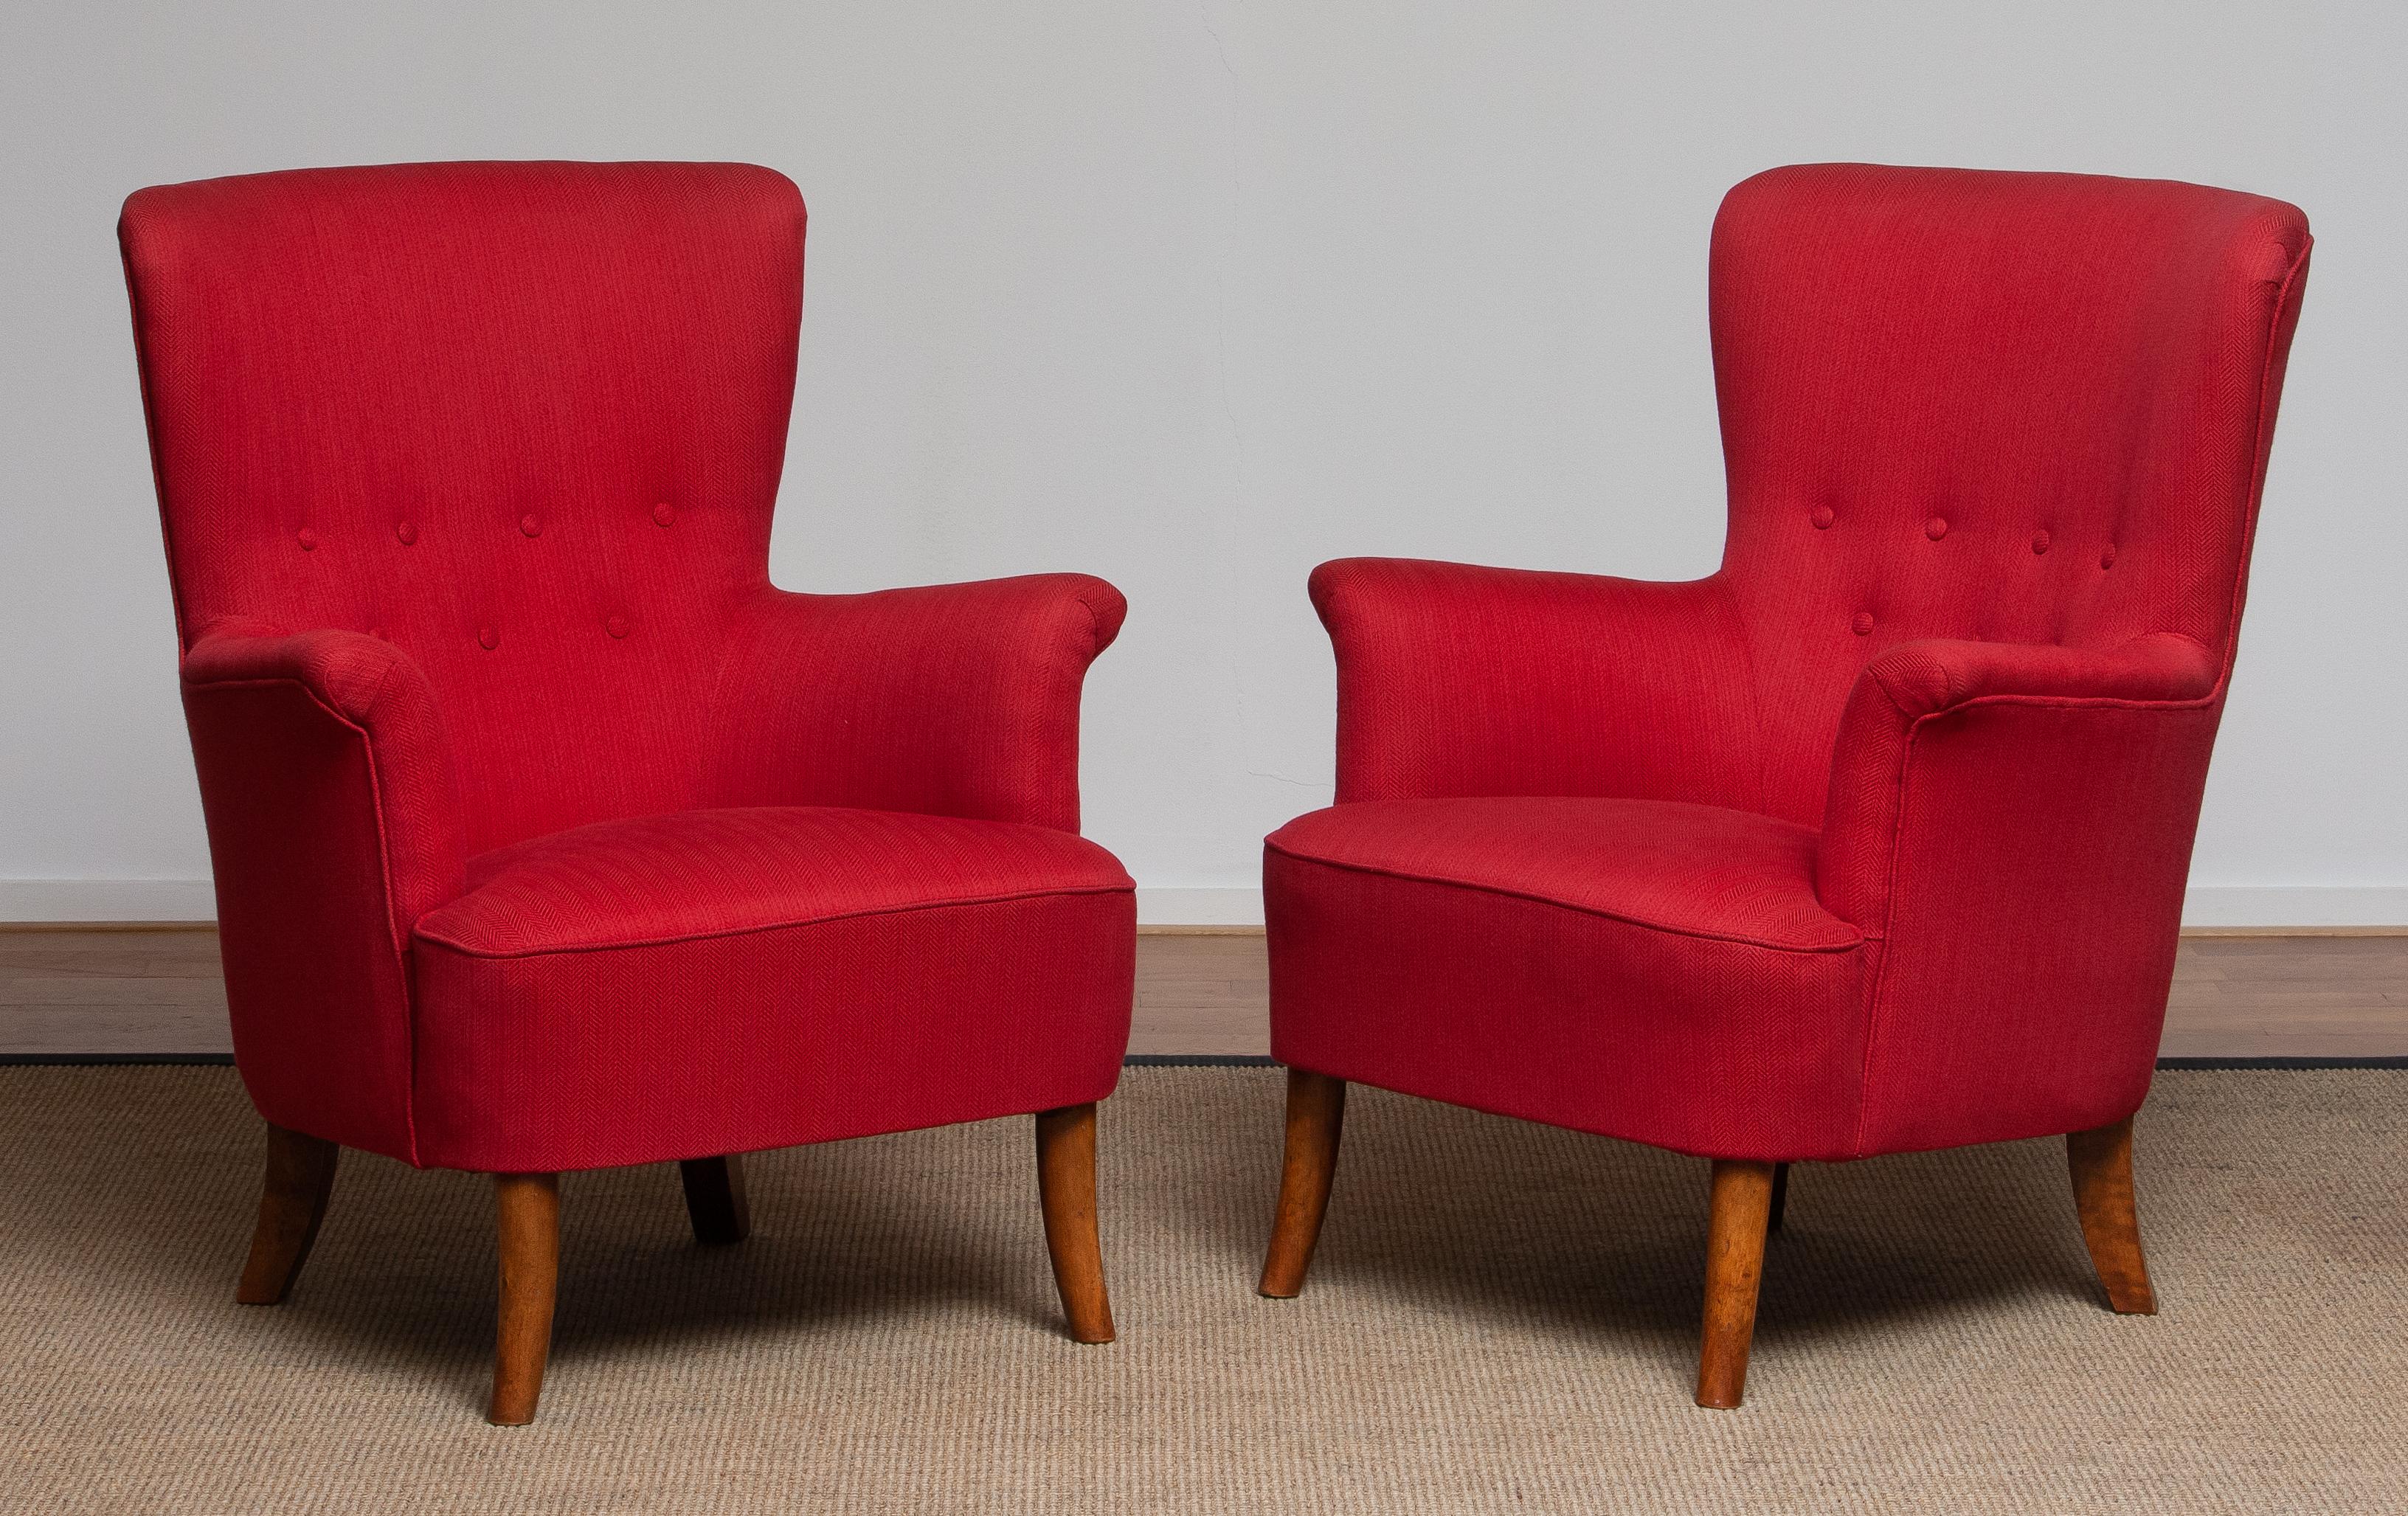 1940s, Fuchsia Easy or Lounge Chair by Carl Malmsten for Oh Sjogren, Sweden 8